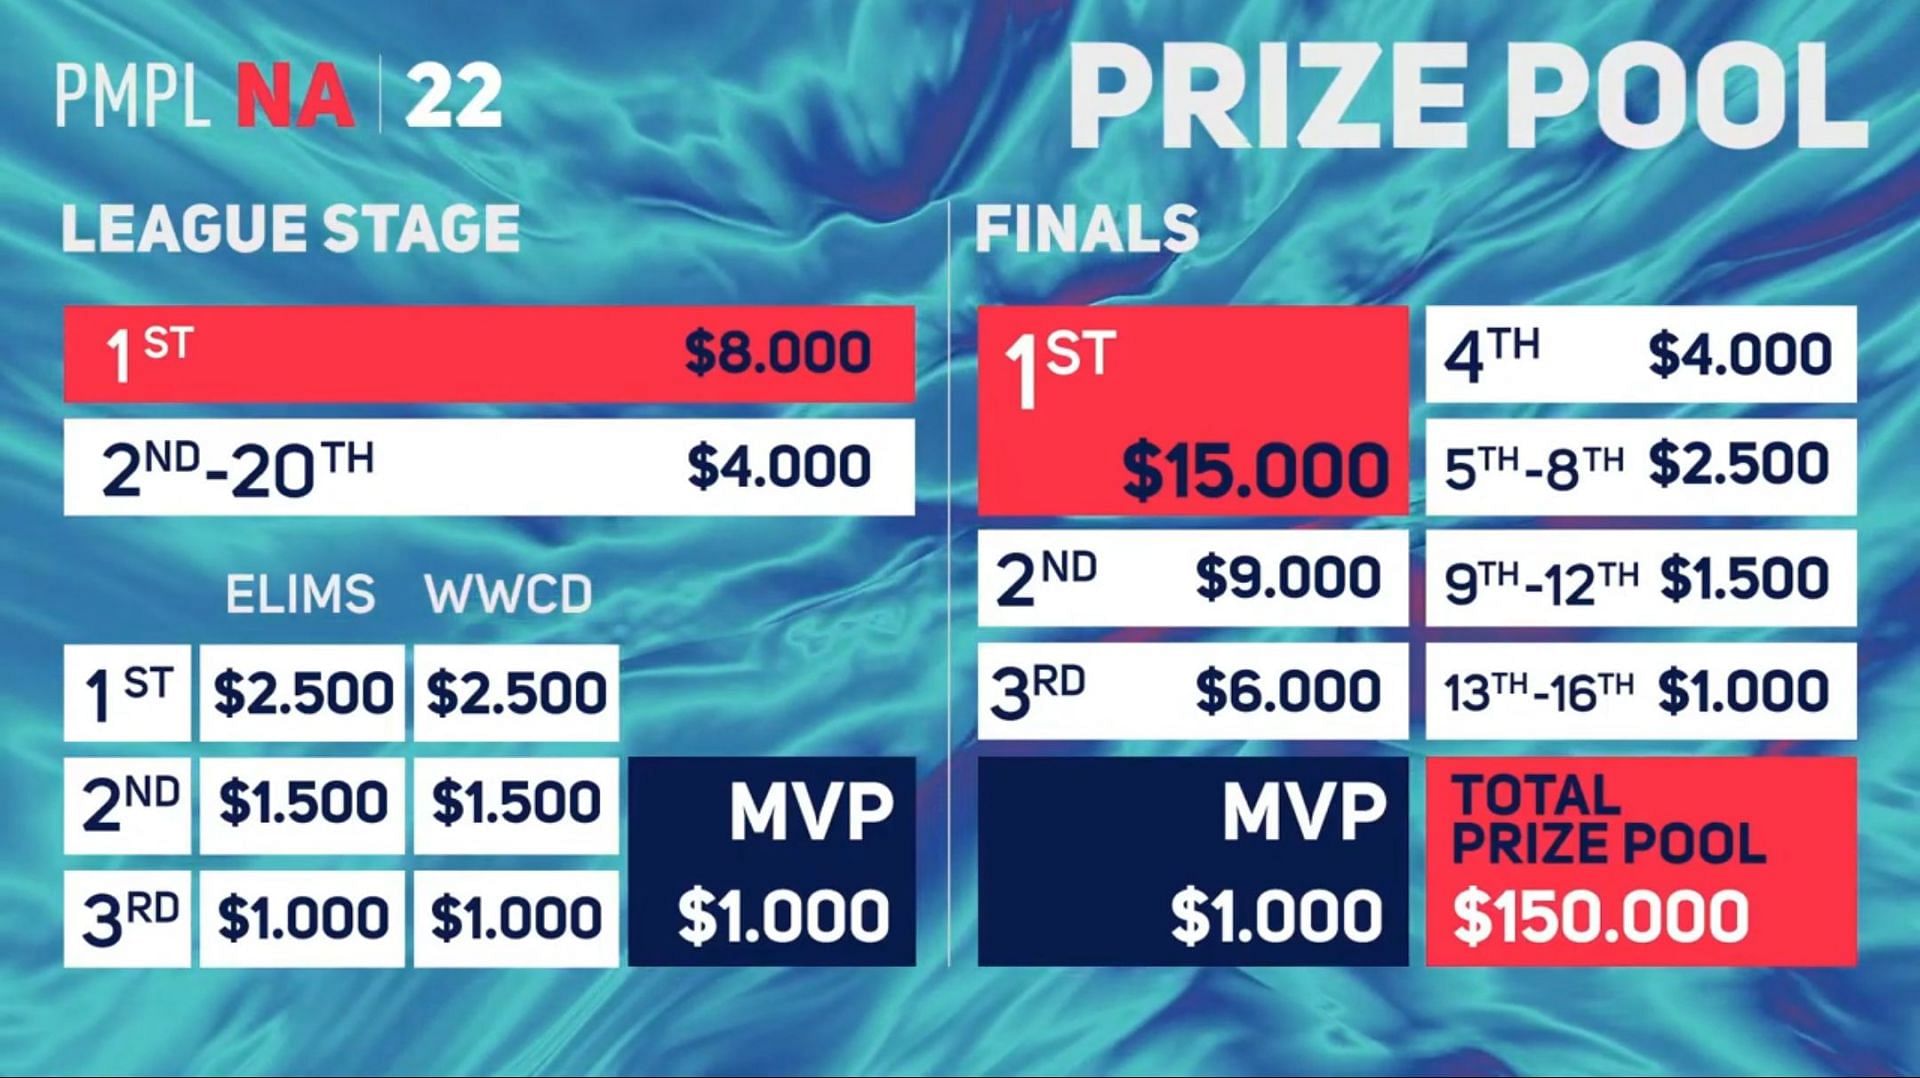 PMPL NA Prize Pool distribution (Image via PUBG Mobile)